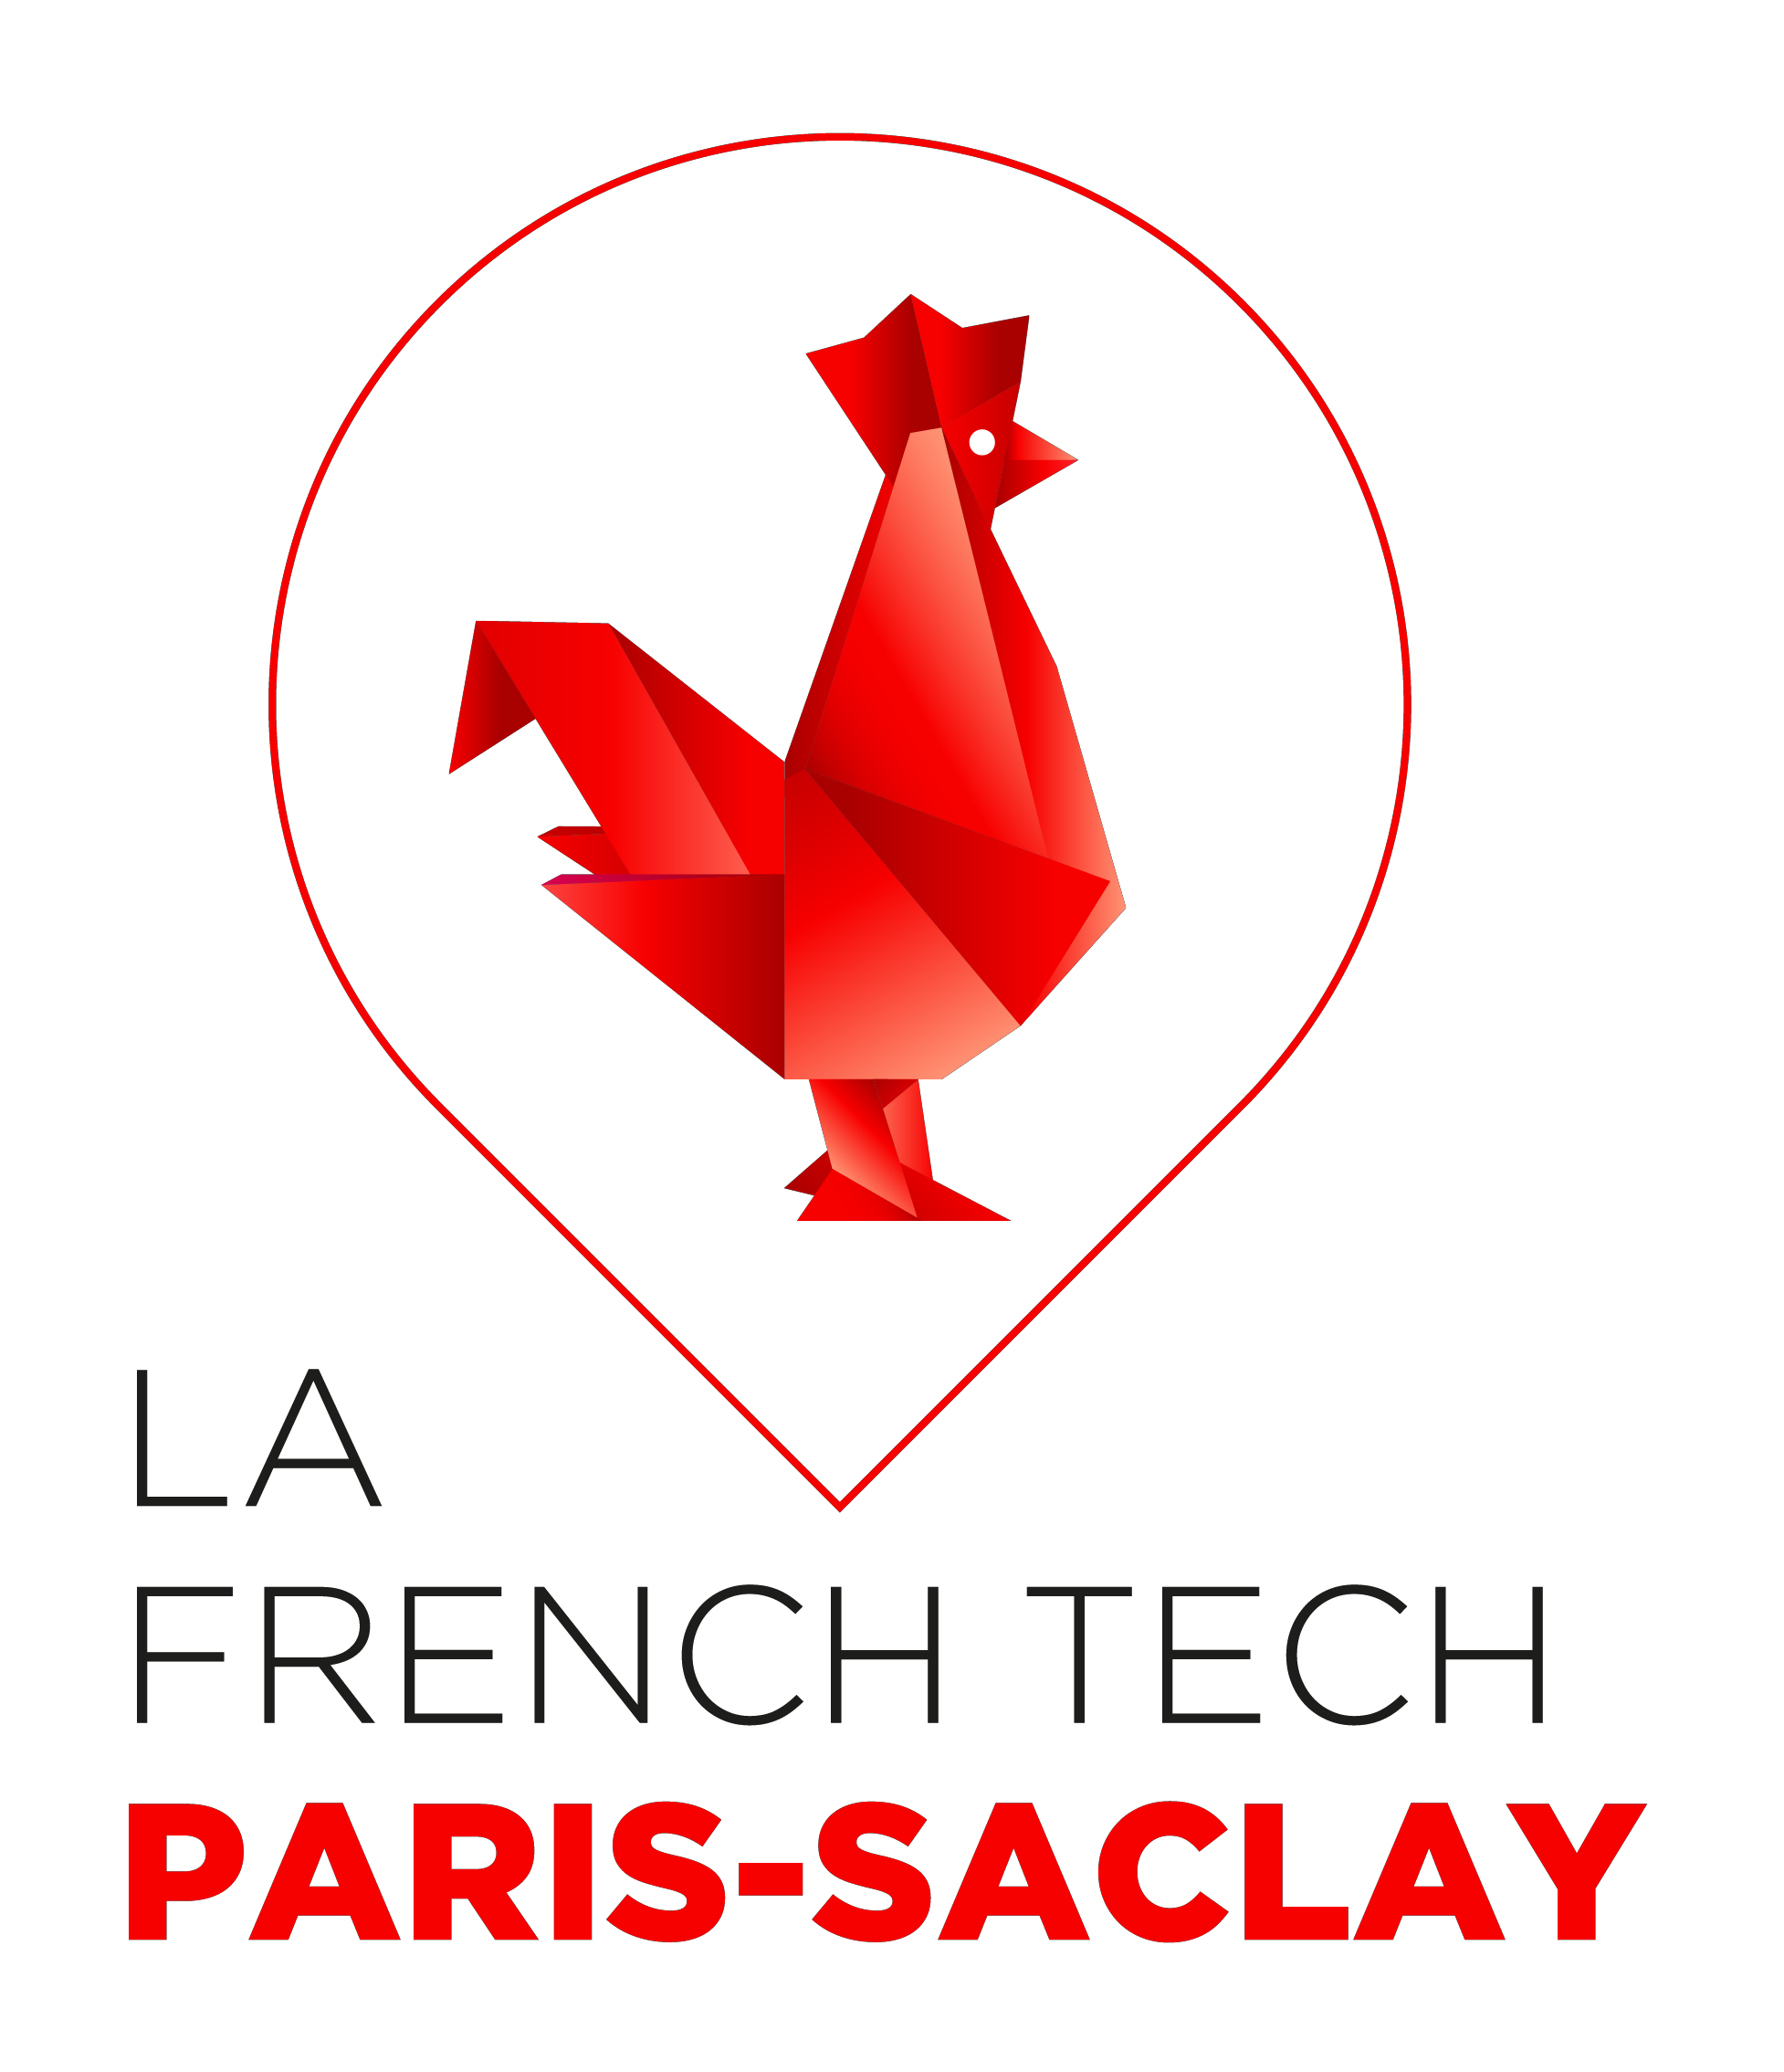 La French Tech Paris Saclay